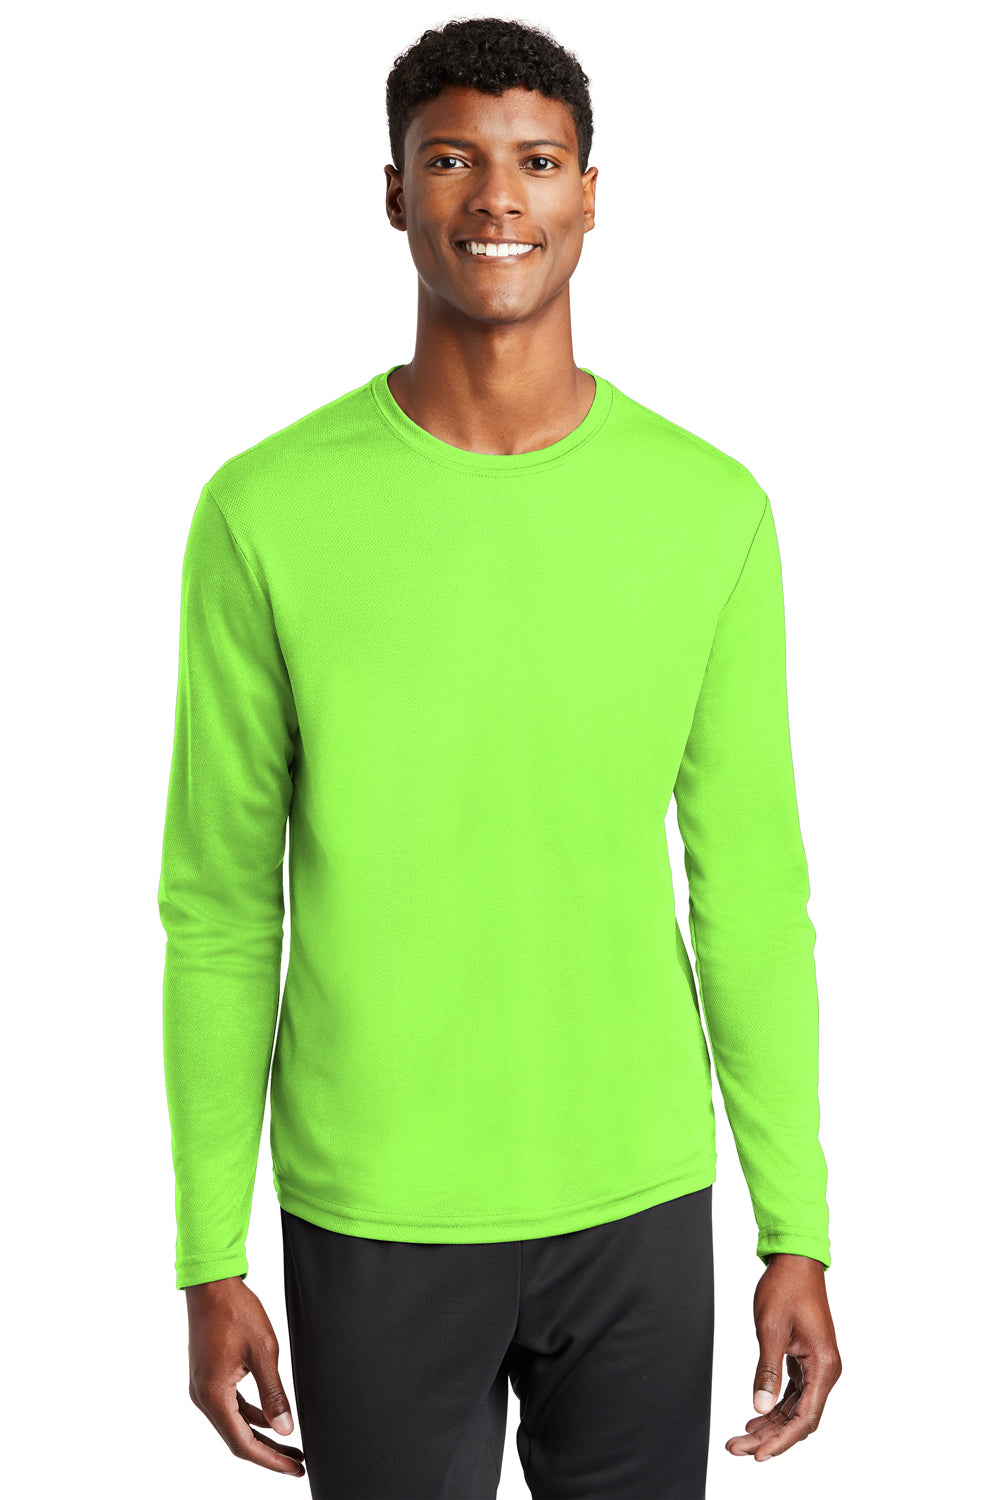 neon green shirt mens